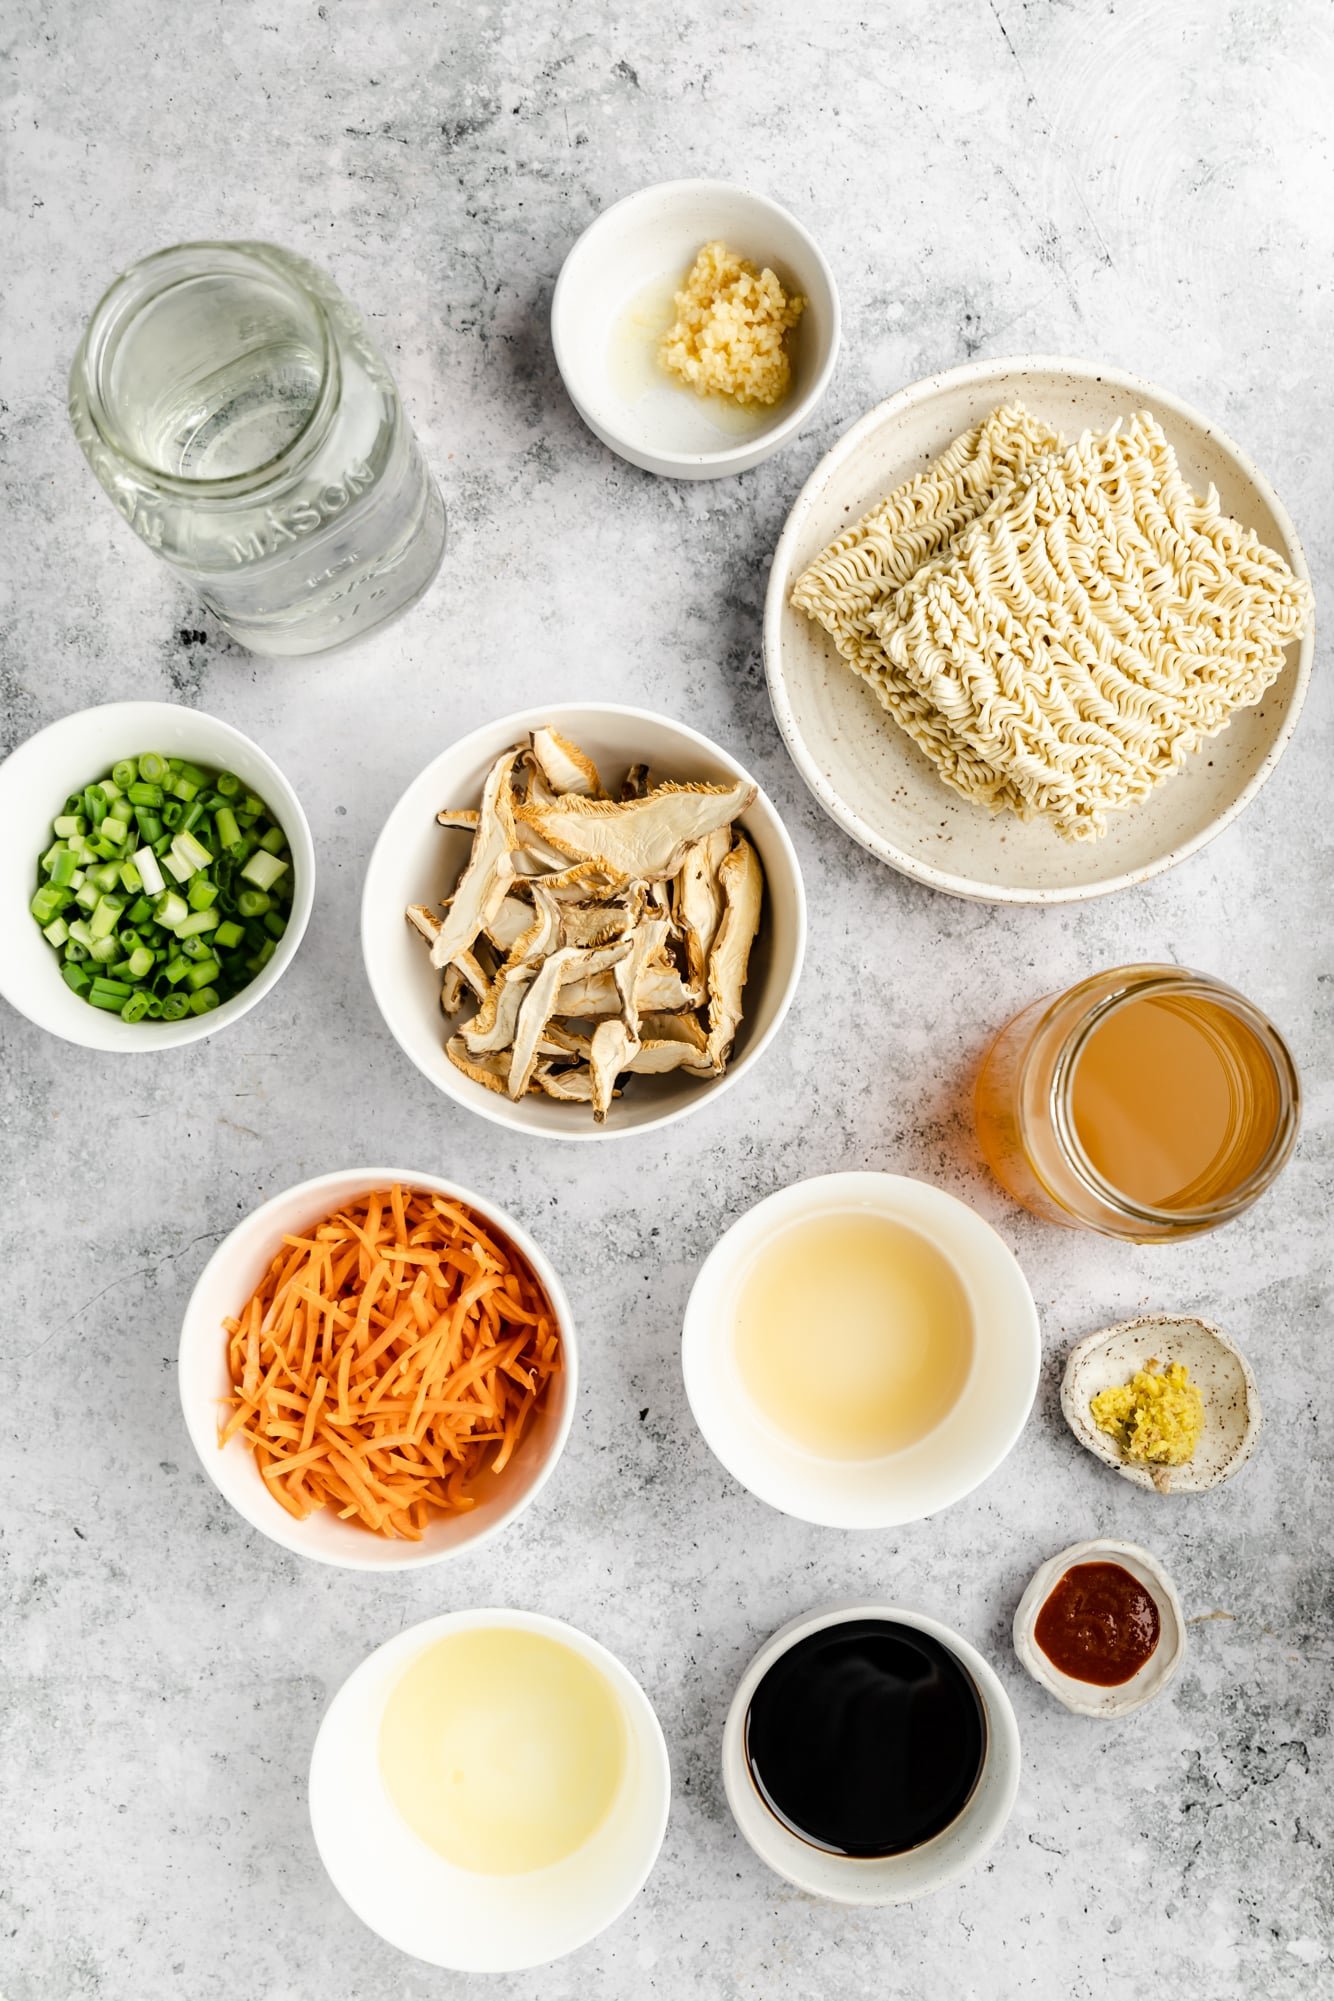 Simple vegan ramen ingredients in individual white bowls.